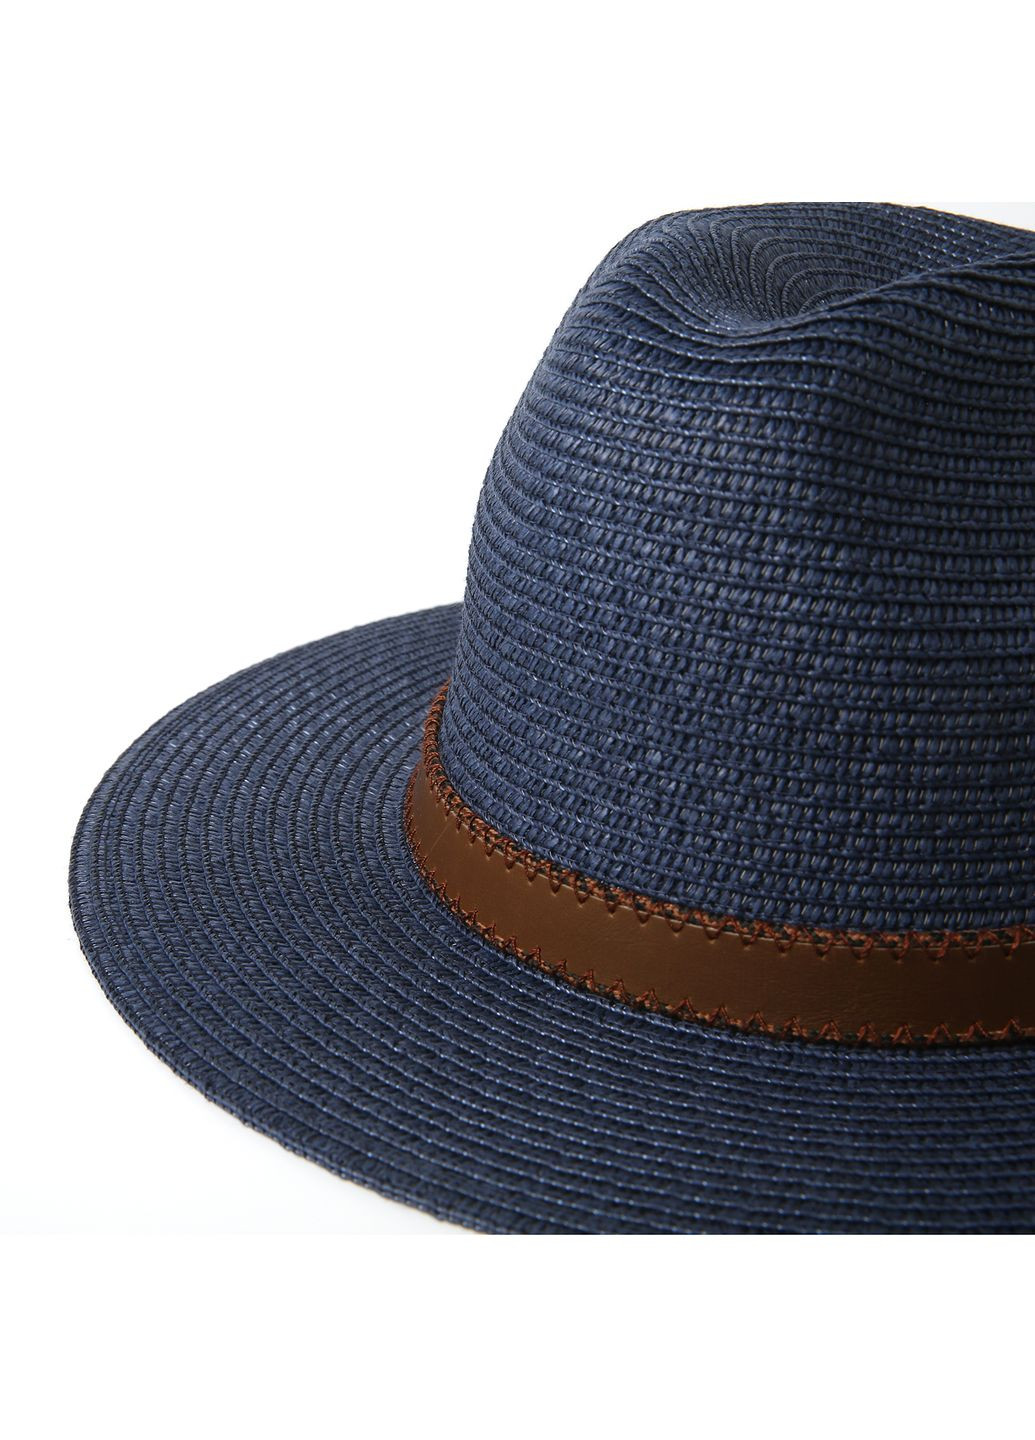 Шляпа федора мужская бумага синяя BAY 376-046 LuckyLOOK 376-046м (289478415)